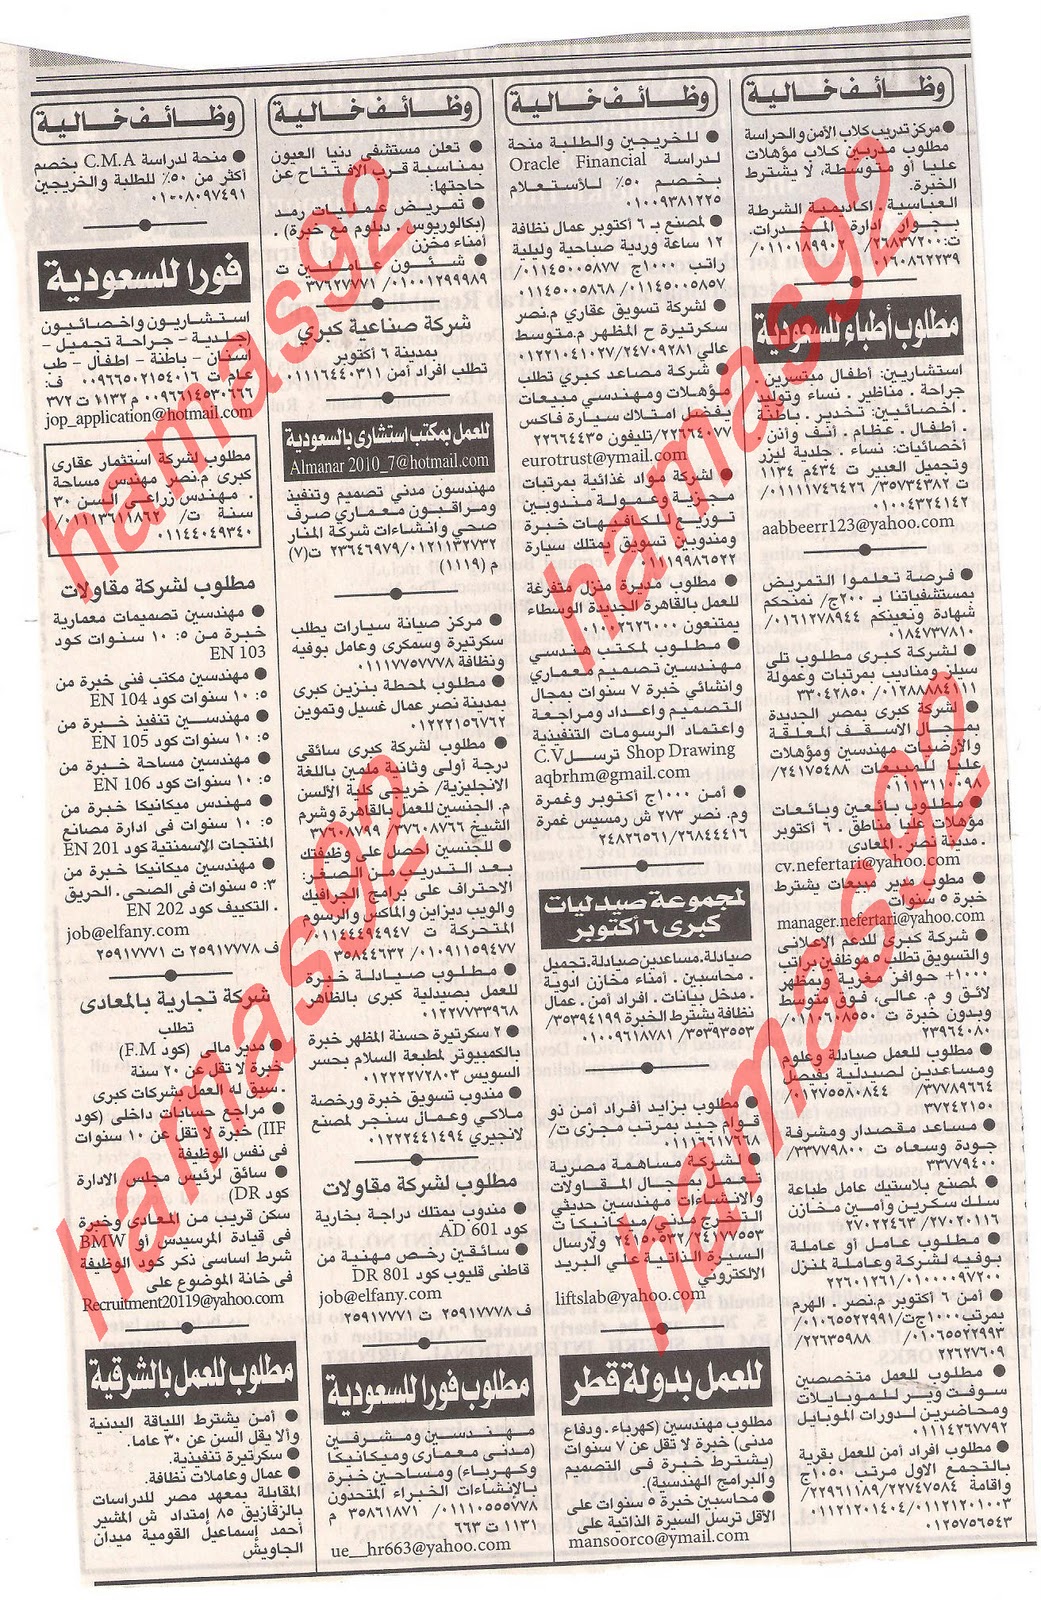 وظائف مصر , وظائف جريدة الاهرام الجمعة 2  ديسمبر 2011 , الجزء الاول Picture+004